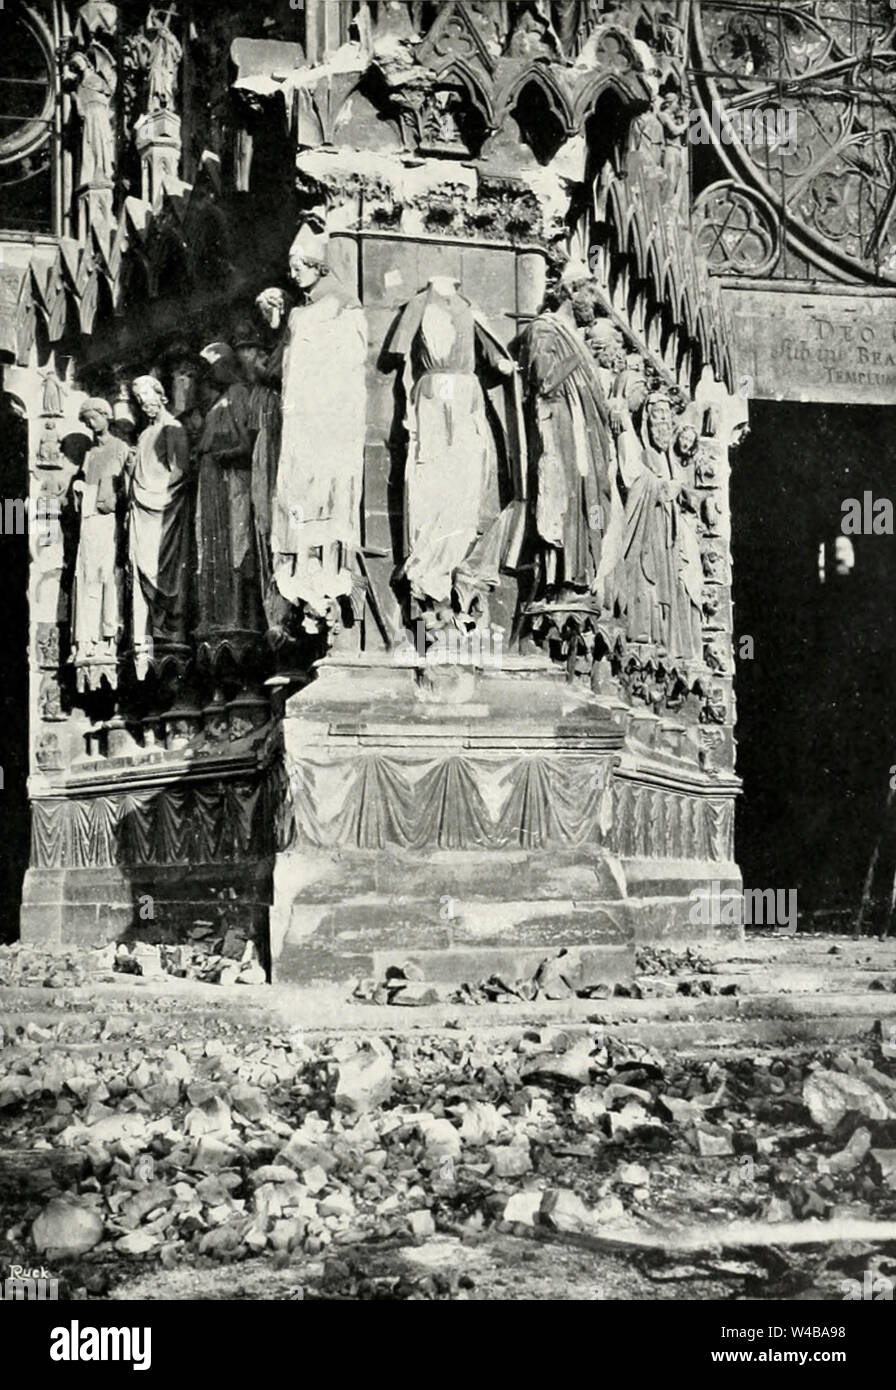 La jetée qui sépare le centre et le nord de portails de la façade - Dommages à la Cathédrale de Reims durant la Première Guerre mondiale - La Statue de la Reine de Saba est détruit Banque D'Images